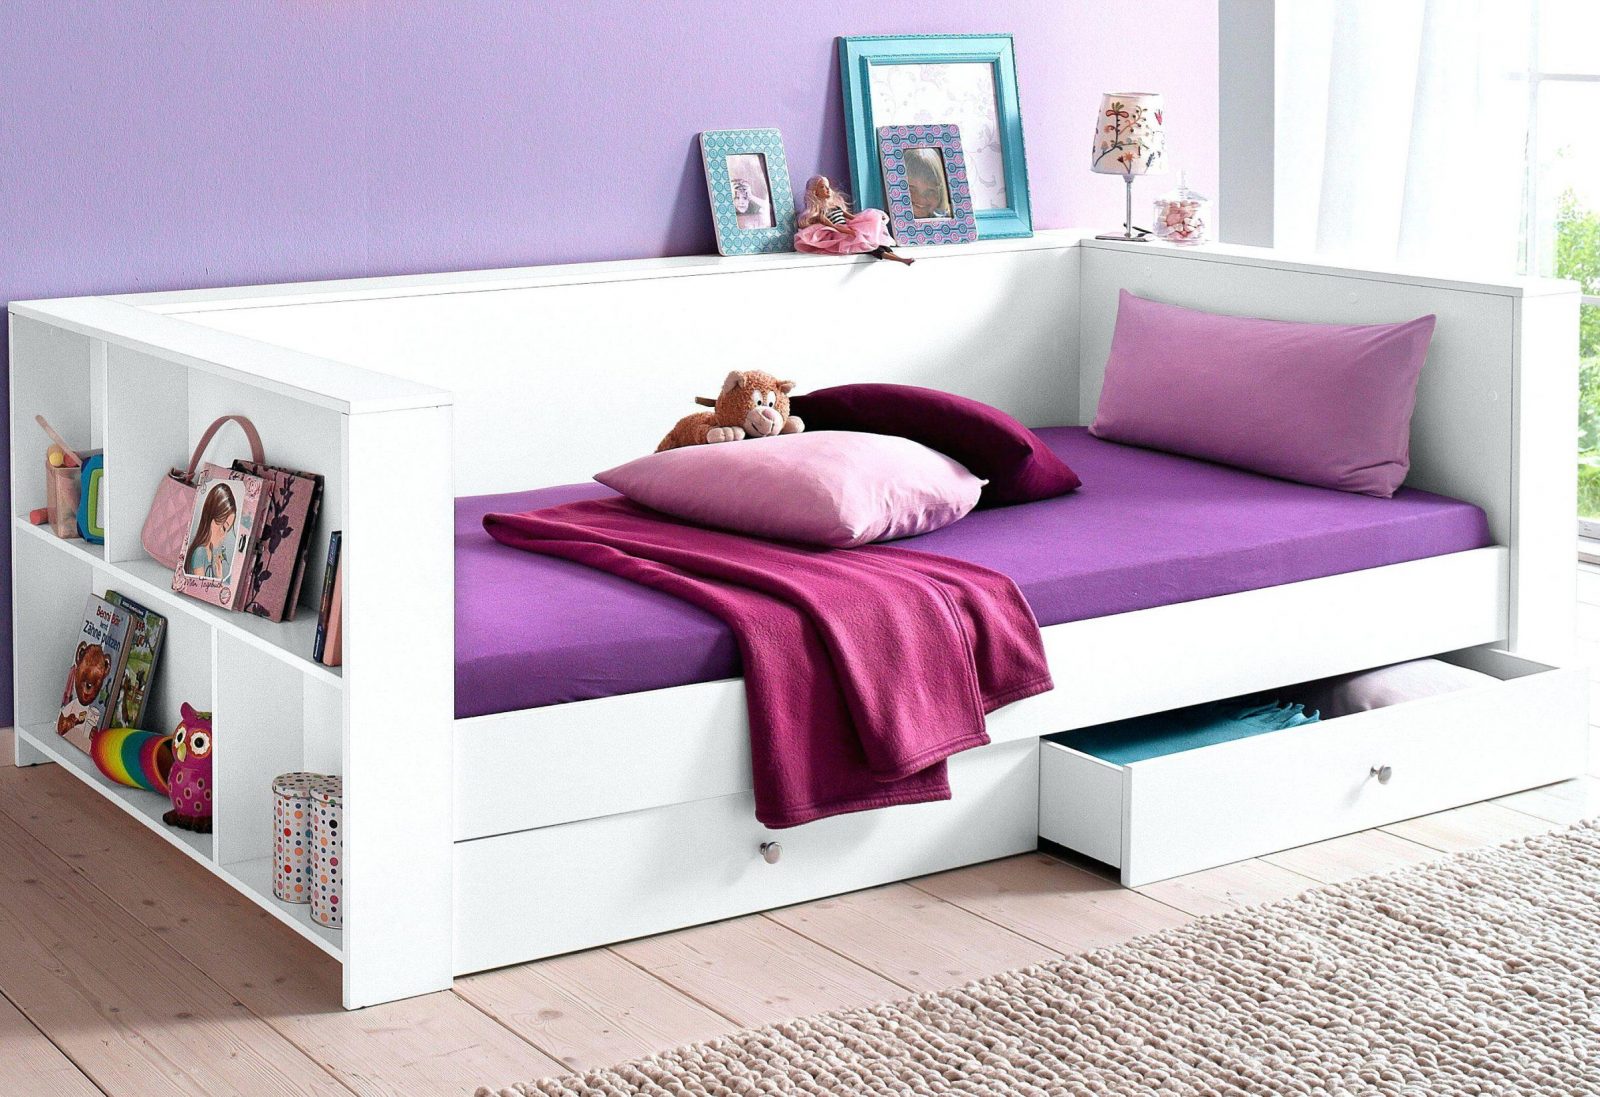 Bett Mit Unterbett Zum Ausziehen 1 Wohndesign Diy Blog von Bett Mit Unterbett Zum Ausziehen Photo